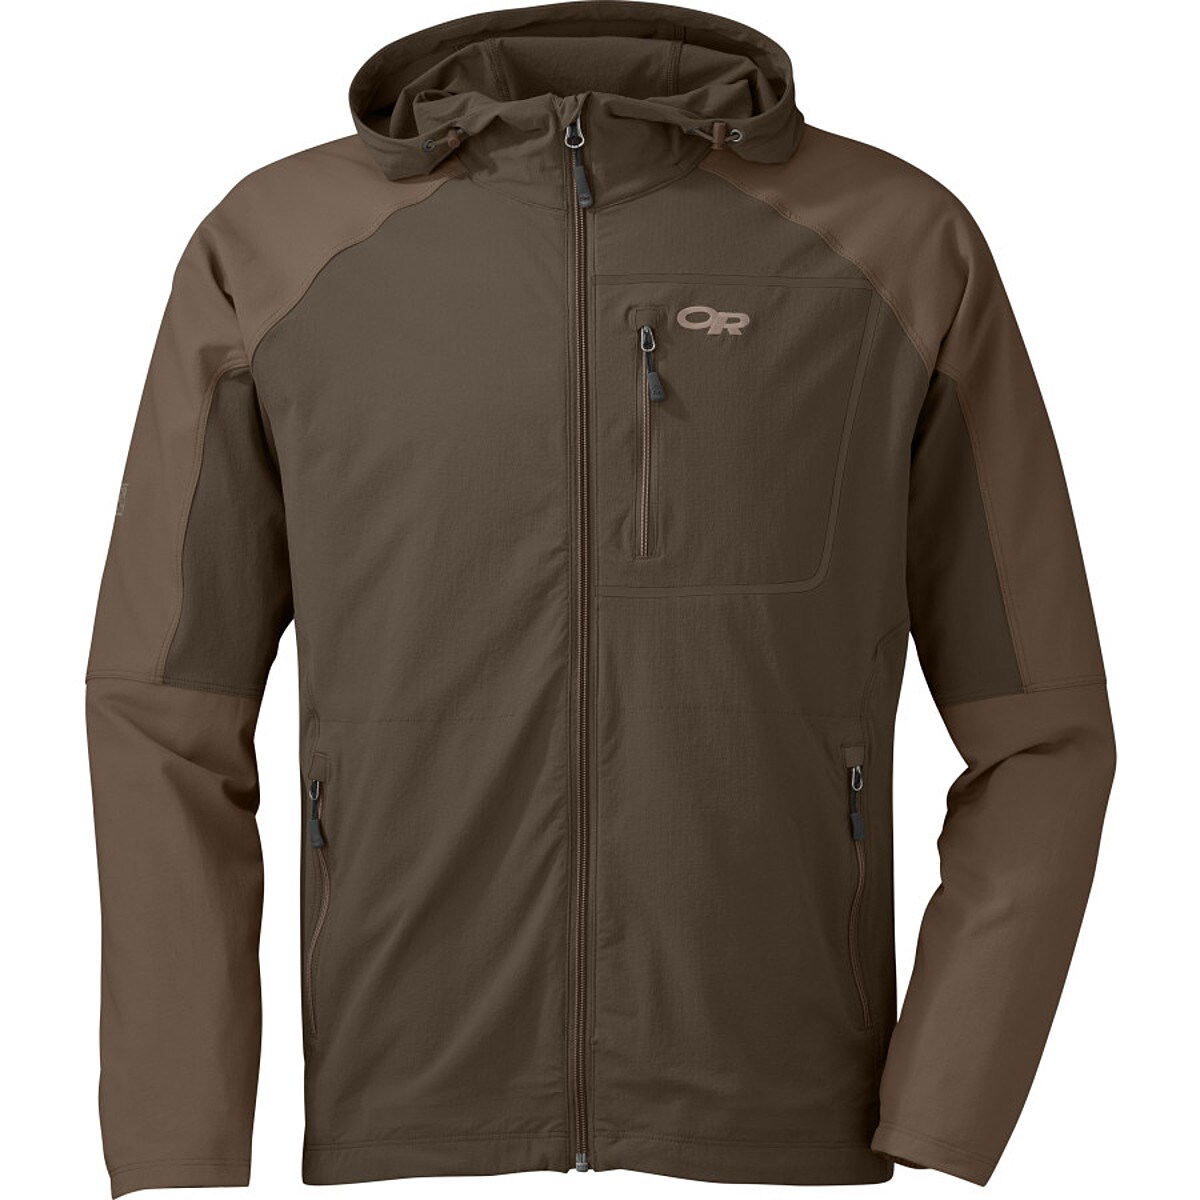 Outdoor Research Ferrosi Hooded Jacket - Men's | eBay